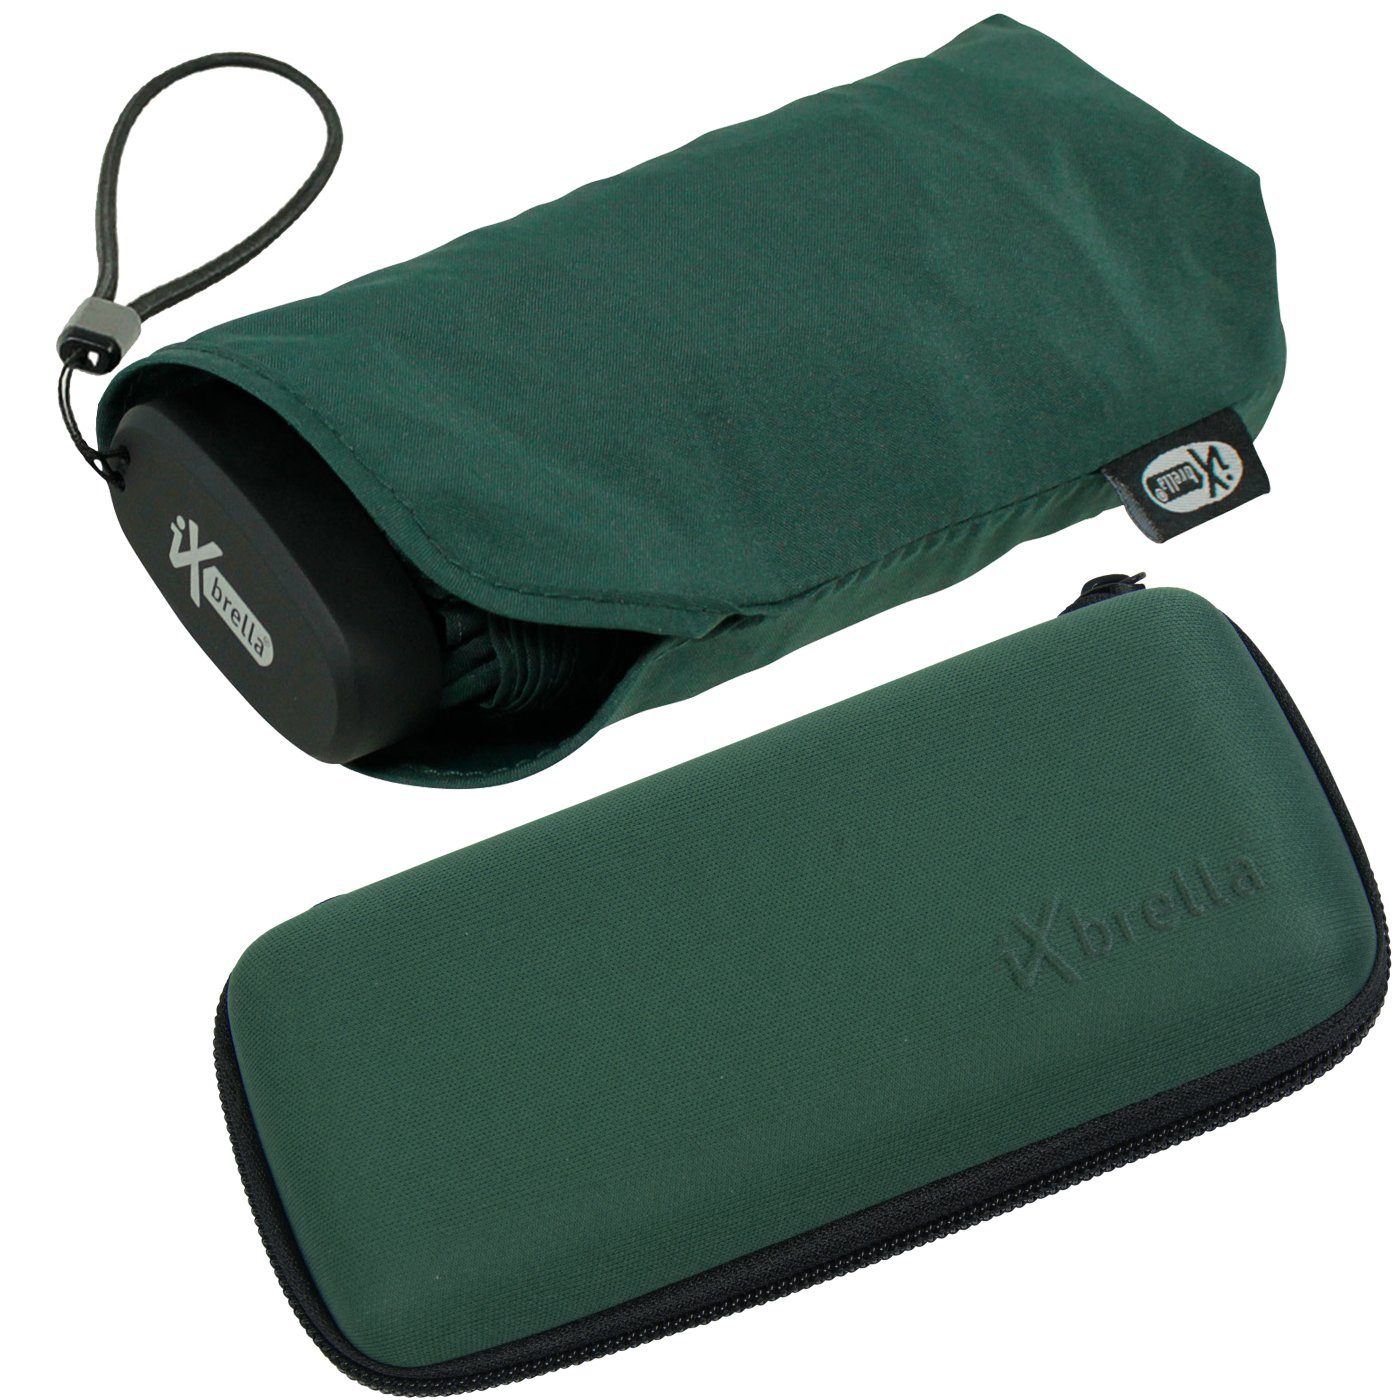 Taschenregenschirm 15 iX-brella dunkelgrün - Softcase-Etui mit Mini pineneedle Handy cm Format, winziger green im ultra-klein, Schirm Ultra